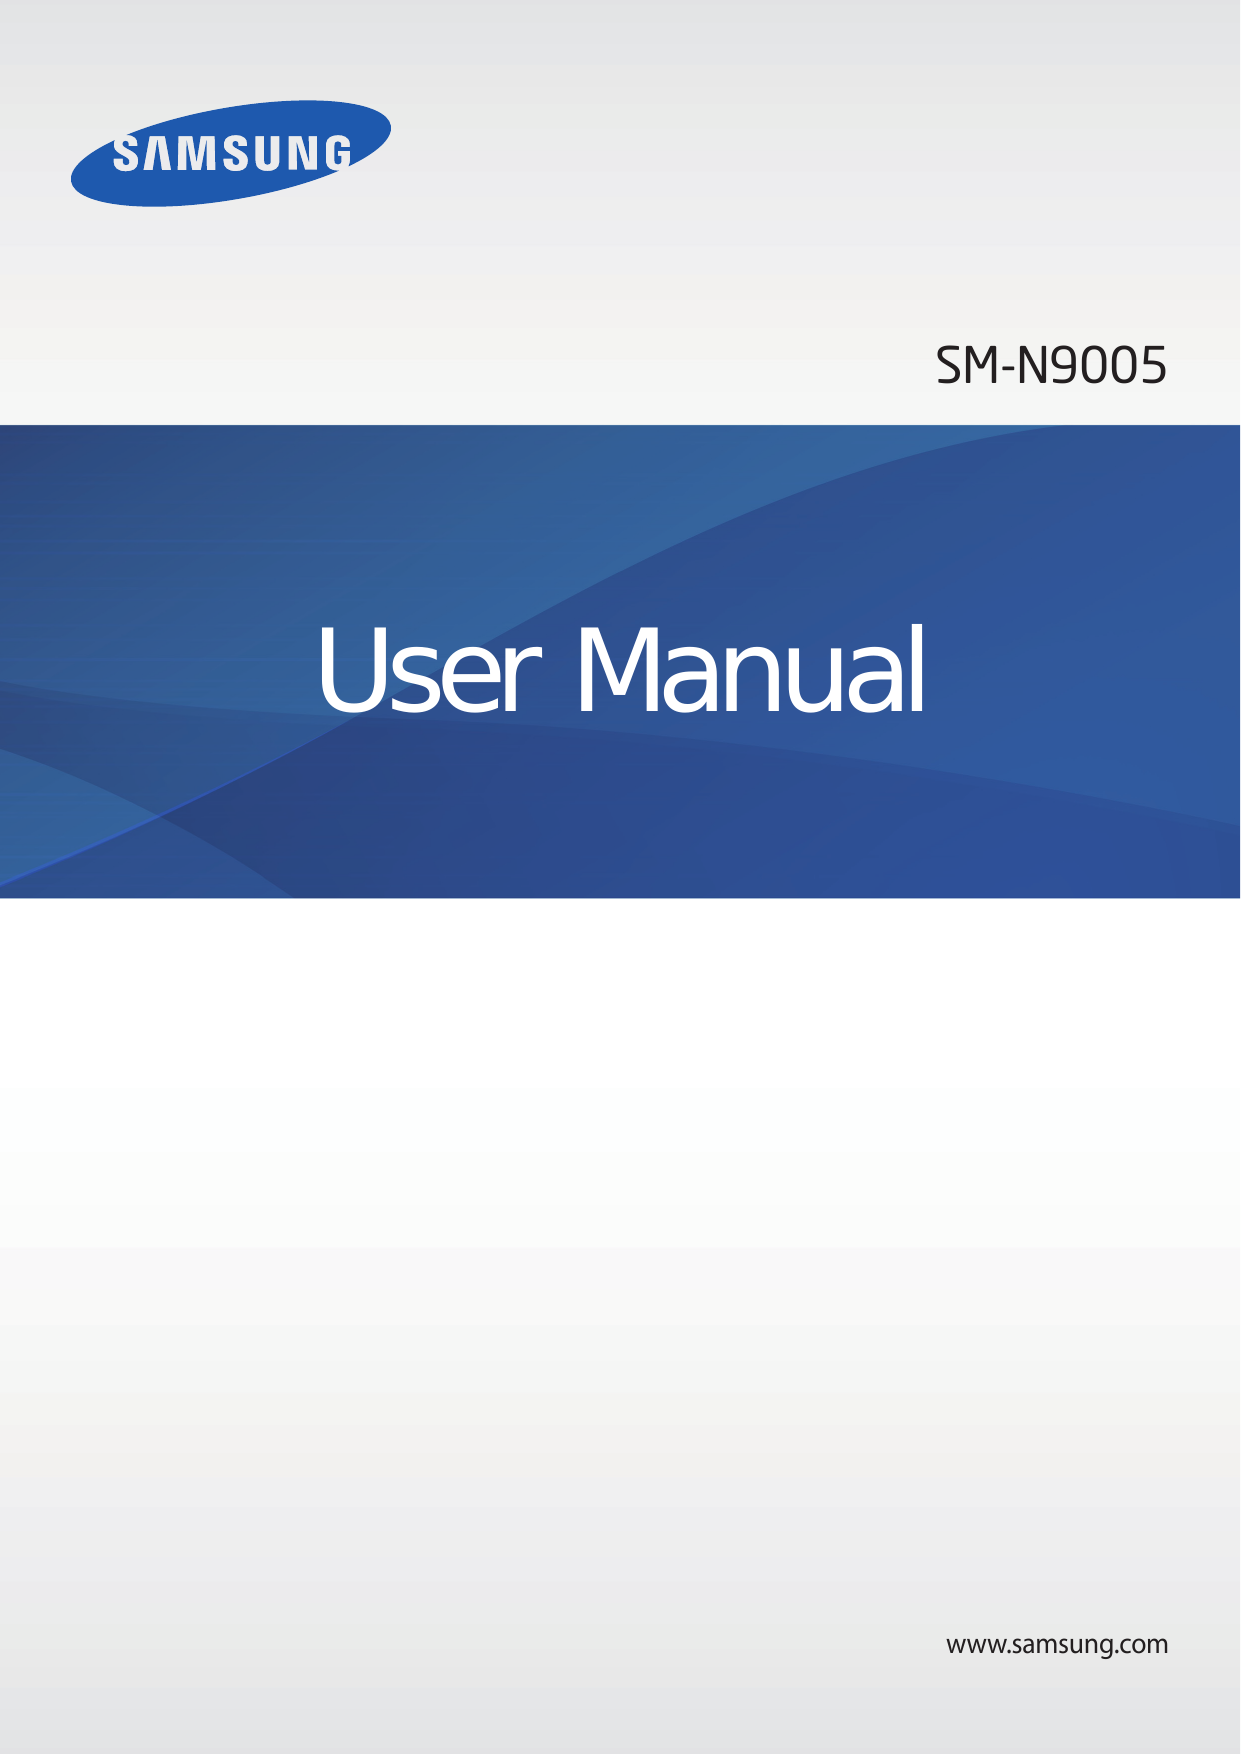 SM-N9005User Manualwww.samsung.com